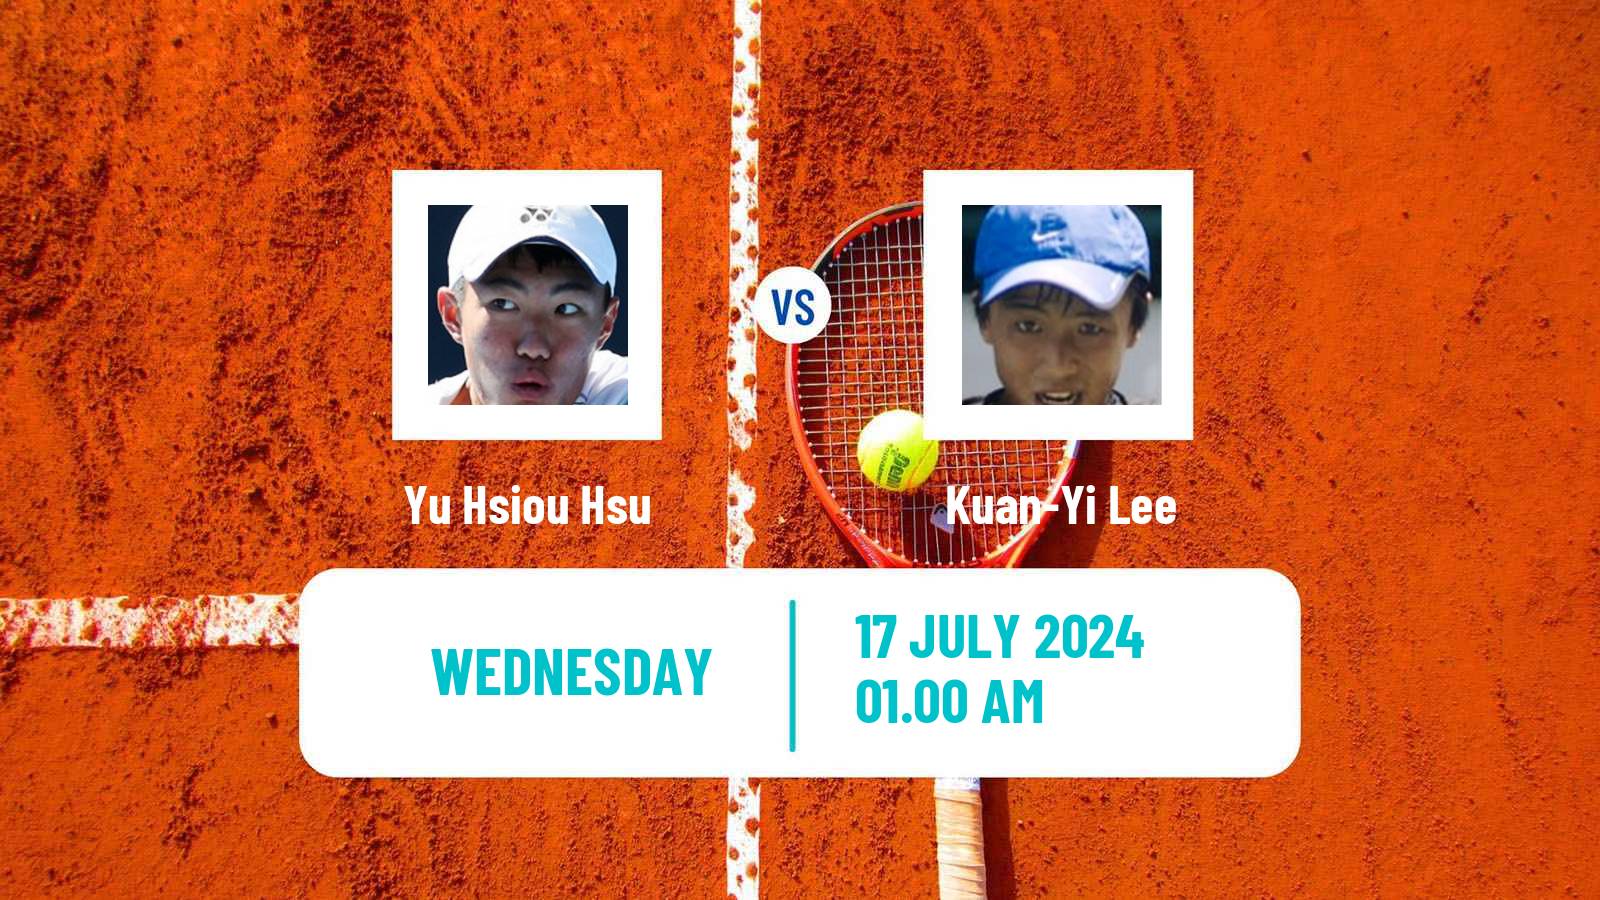 Tennis ITF M25 Tianjin 2 Men Yu Hsiou Hsu - Kuan-Yi Lee